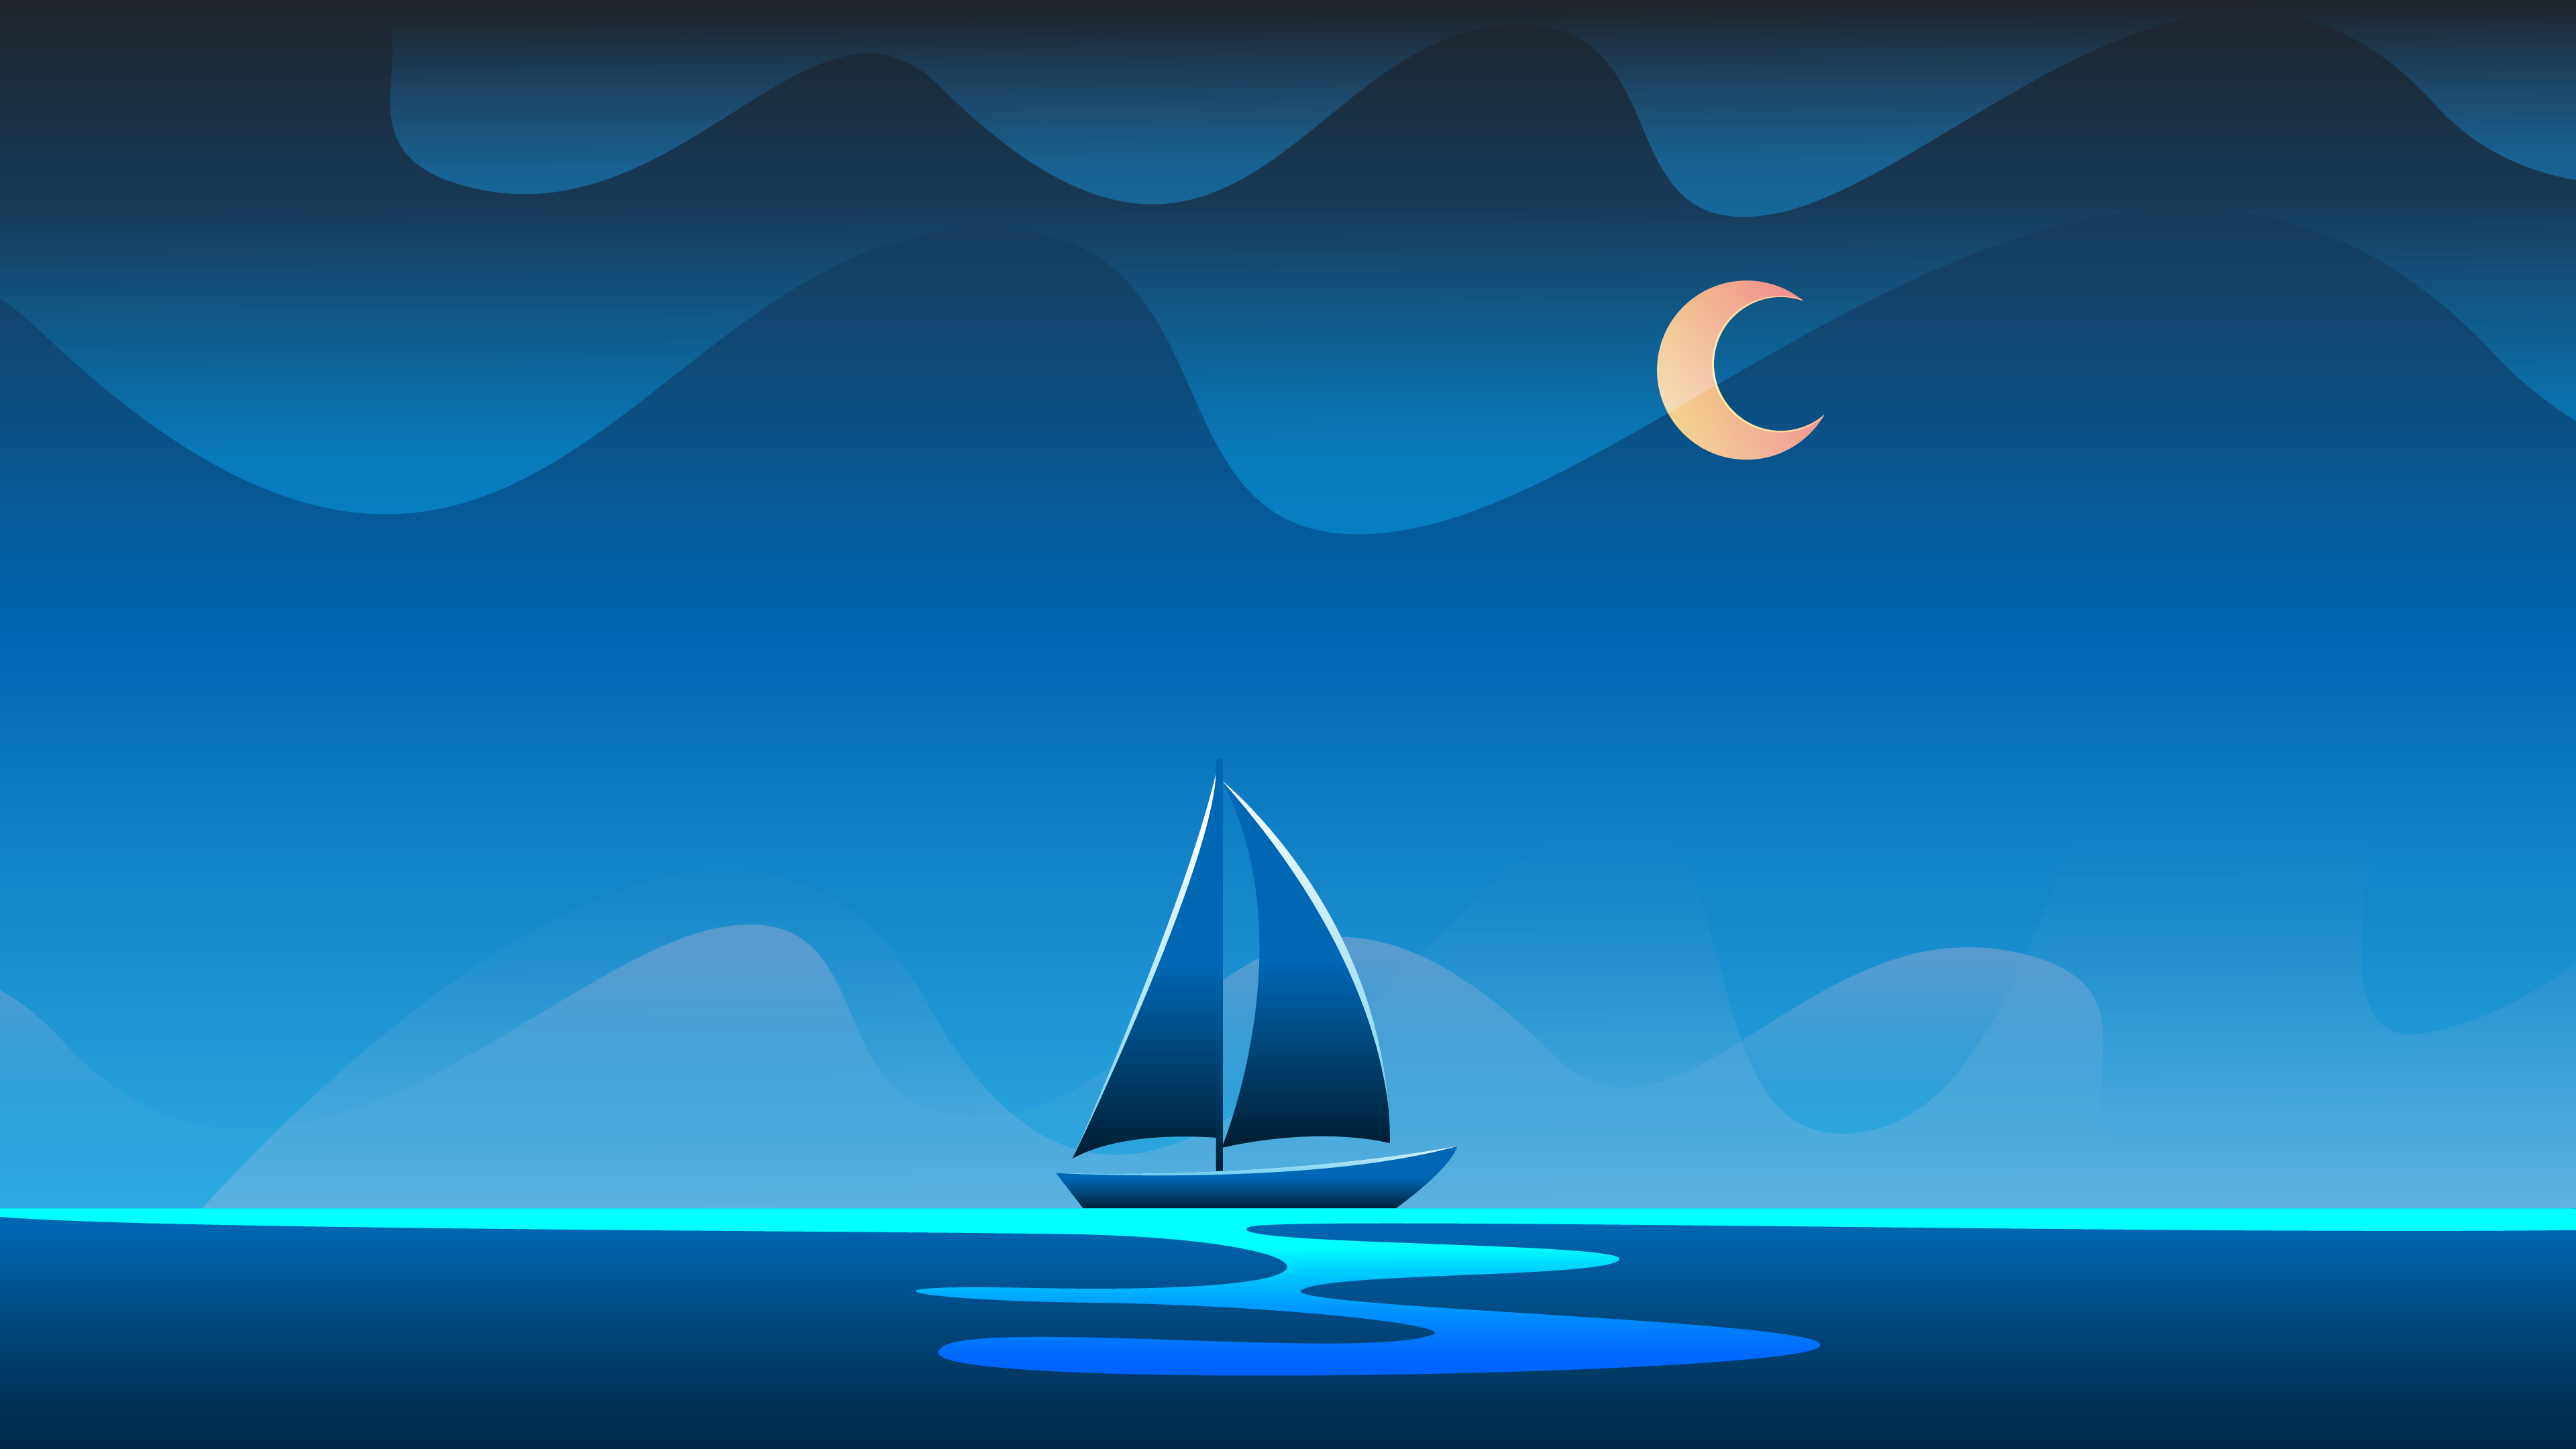 Nếu bạn yêu thích sự đơn giản và tinh tế, bức tranh nền Minimalist Ocean sẽ hấp dẫn bạn ngay từ cái nhìn đầu tiên. Với các đường nét đơn giản và hướng tới chủ đạo với gam màu xanh biển nhẹ nhàng, nhưng tạo nên một vẻ đẹp đầy ấn tượng và cuốn hút.